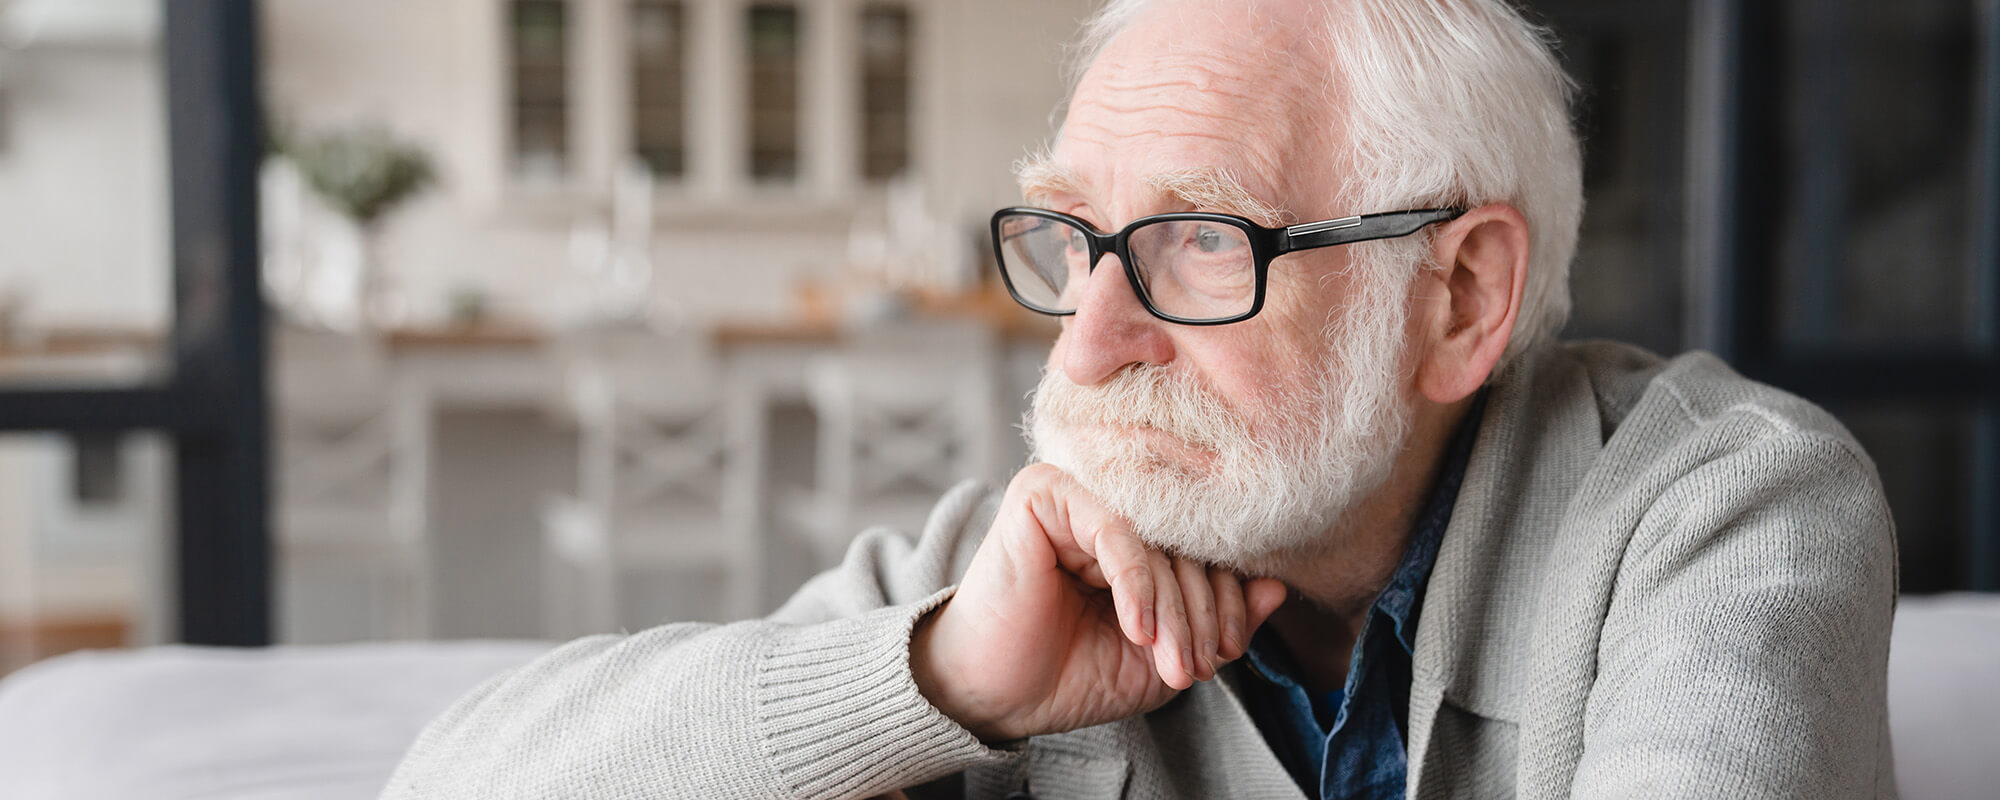 Ein älterer Mann mit Brille und weißem Vollbart schaut nachdenklich.